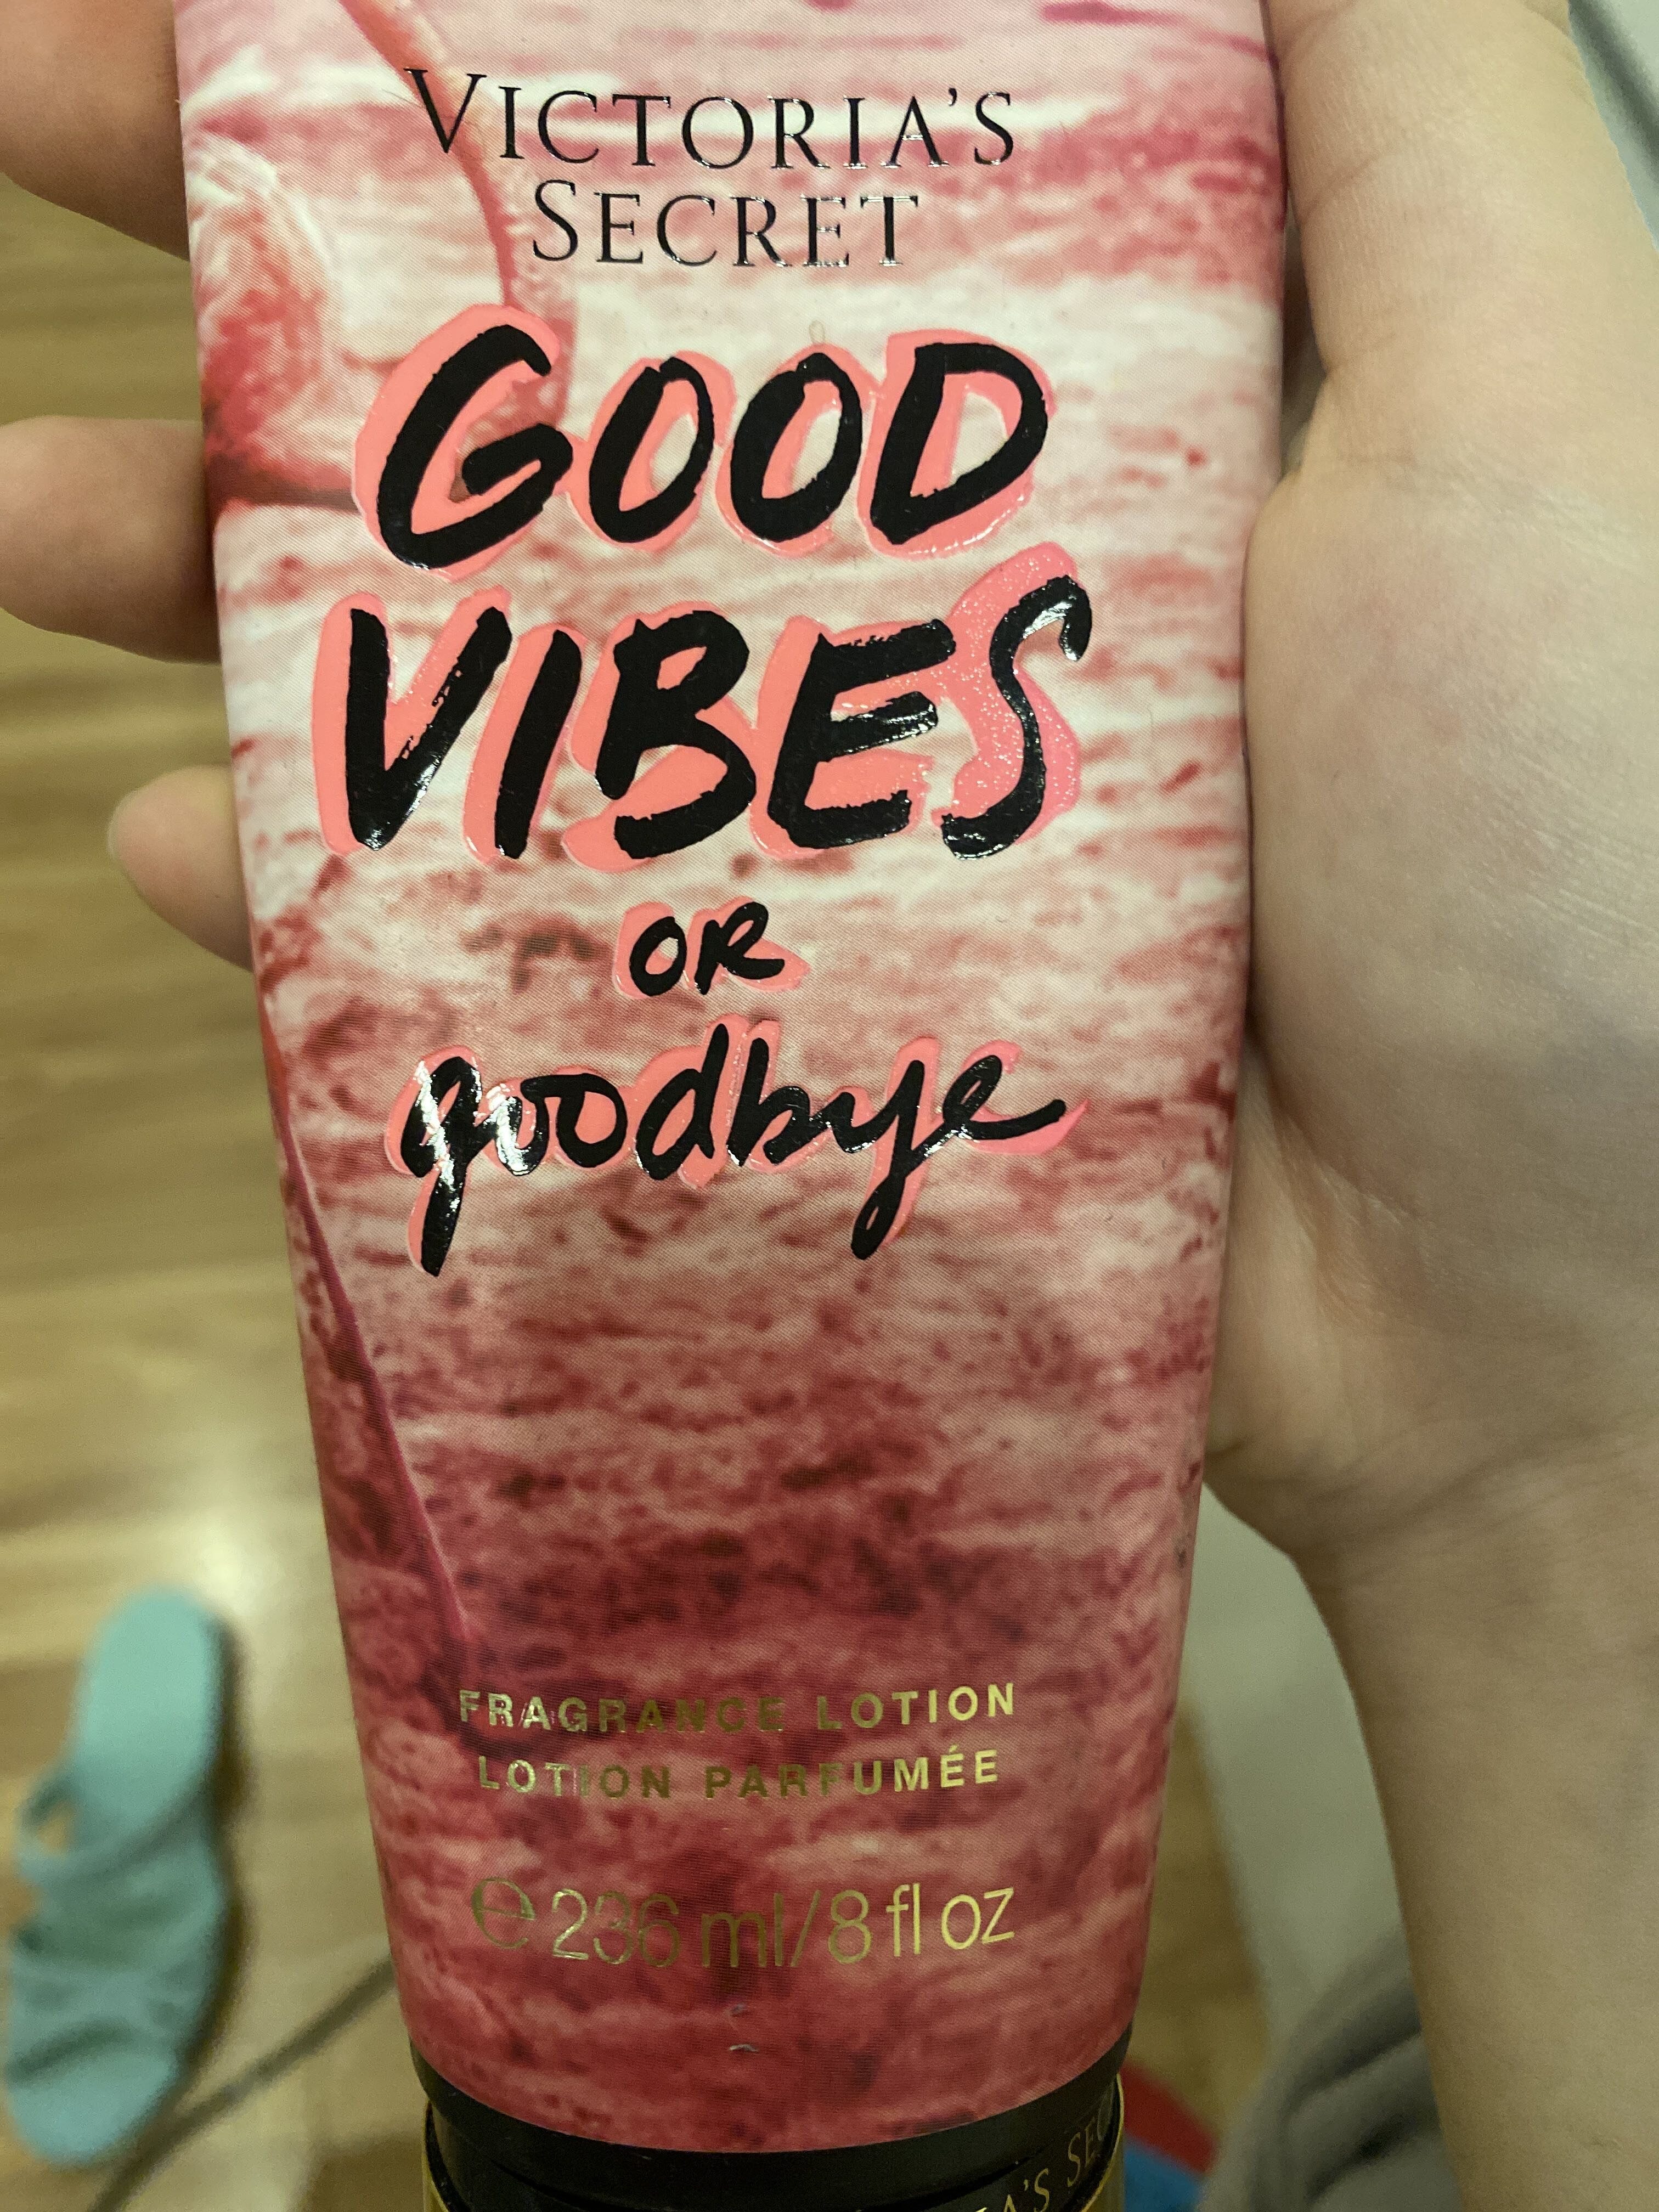 Good vibes - Produit - en